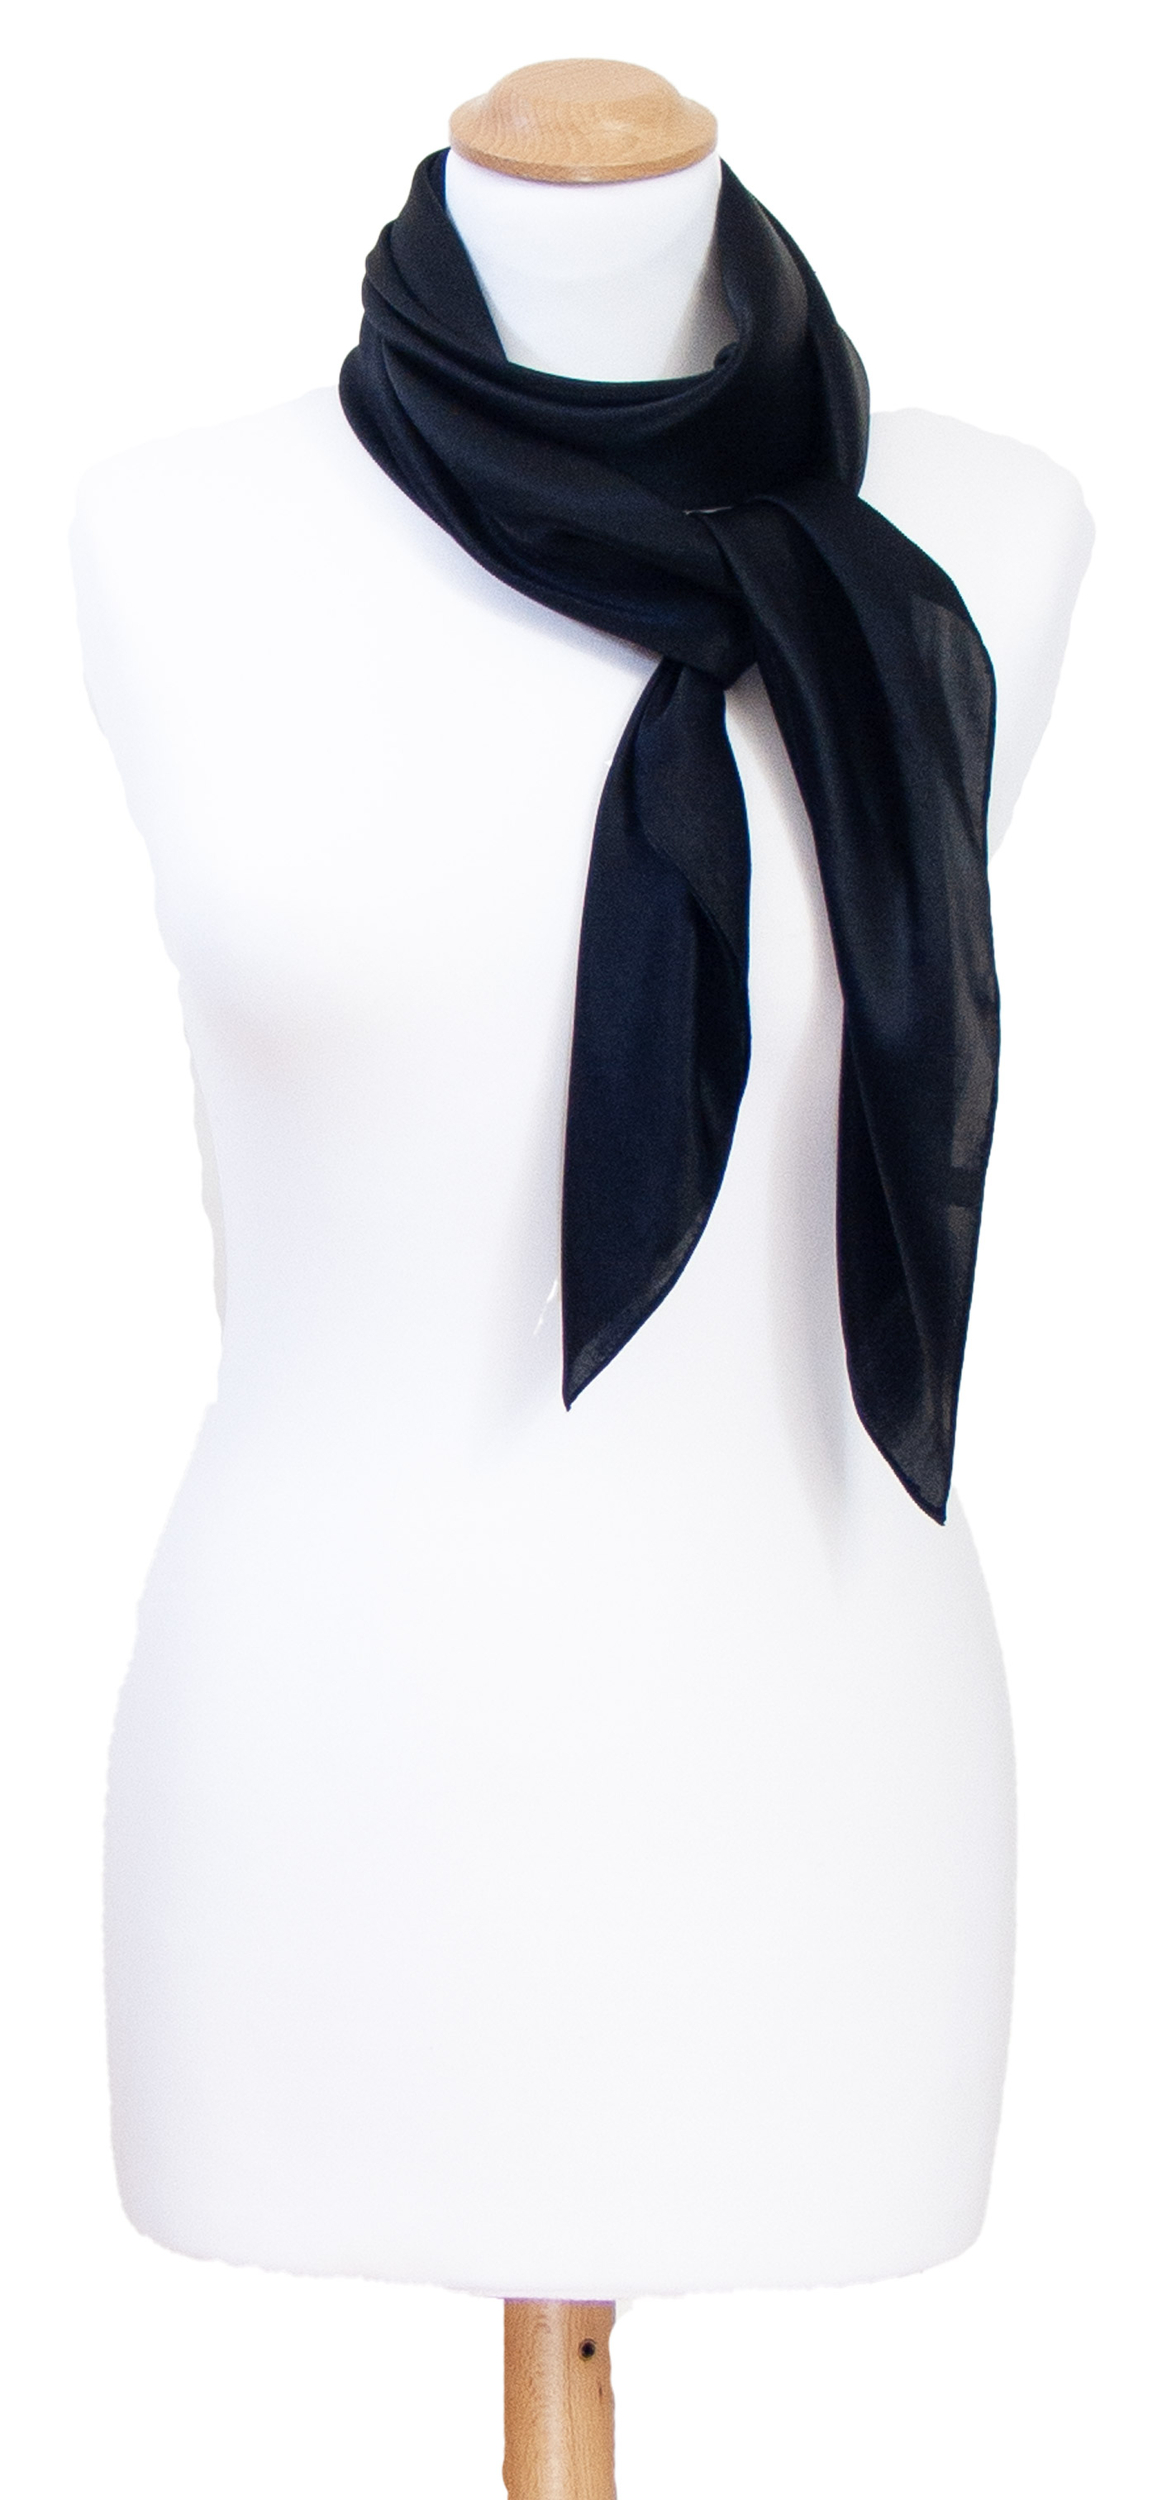 Foulard carré en soie noir uni 110 cm